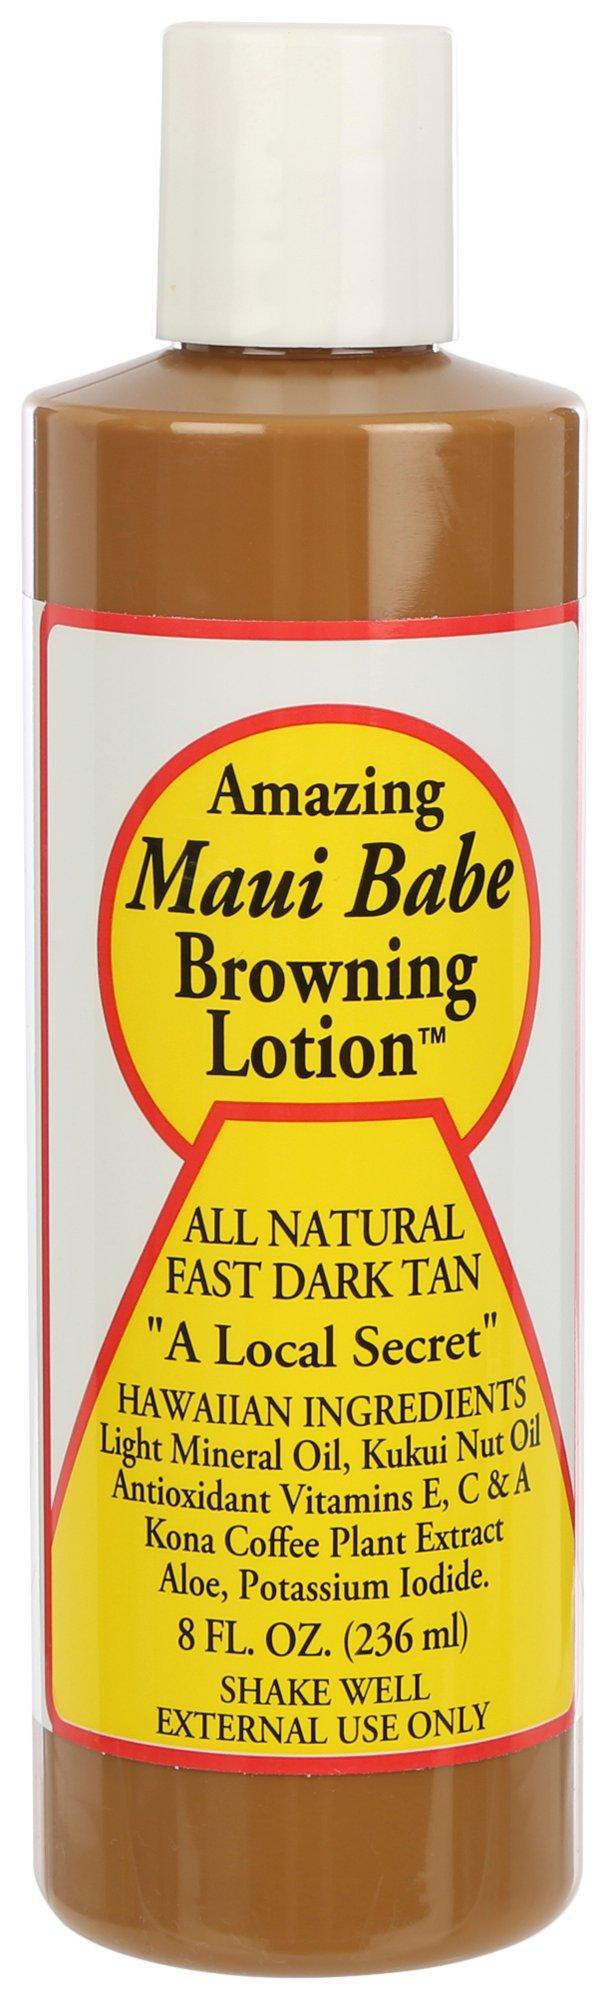 Maui Babe 8 Fl.Oz. All Natural Dark Tan